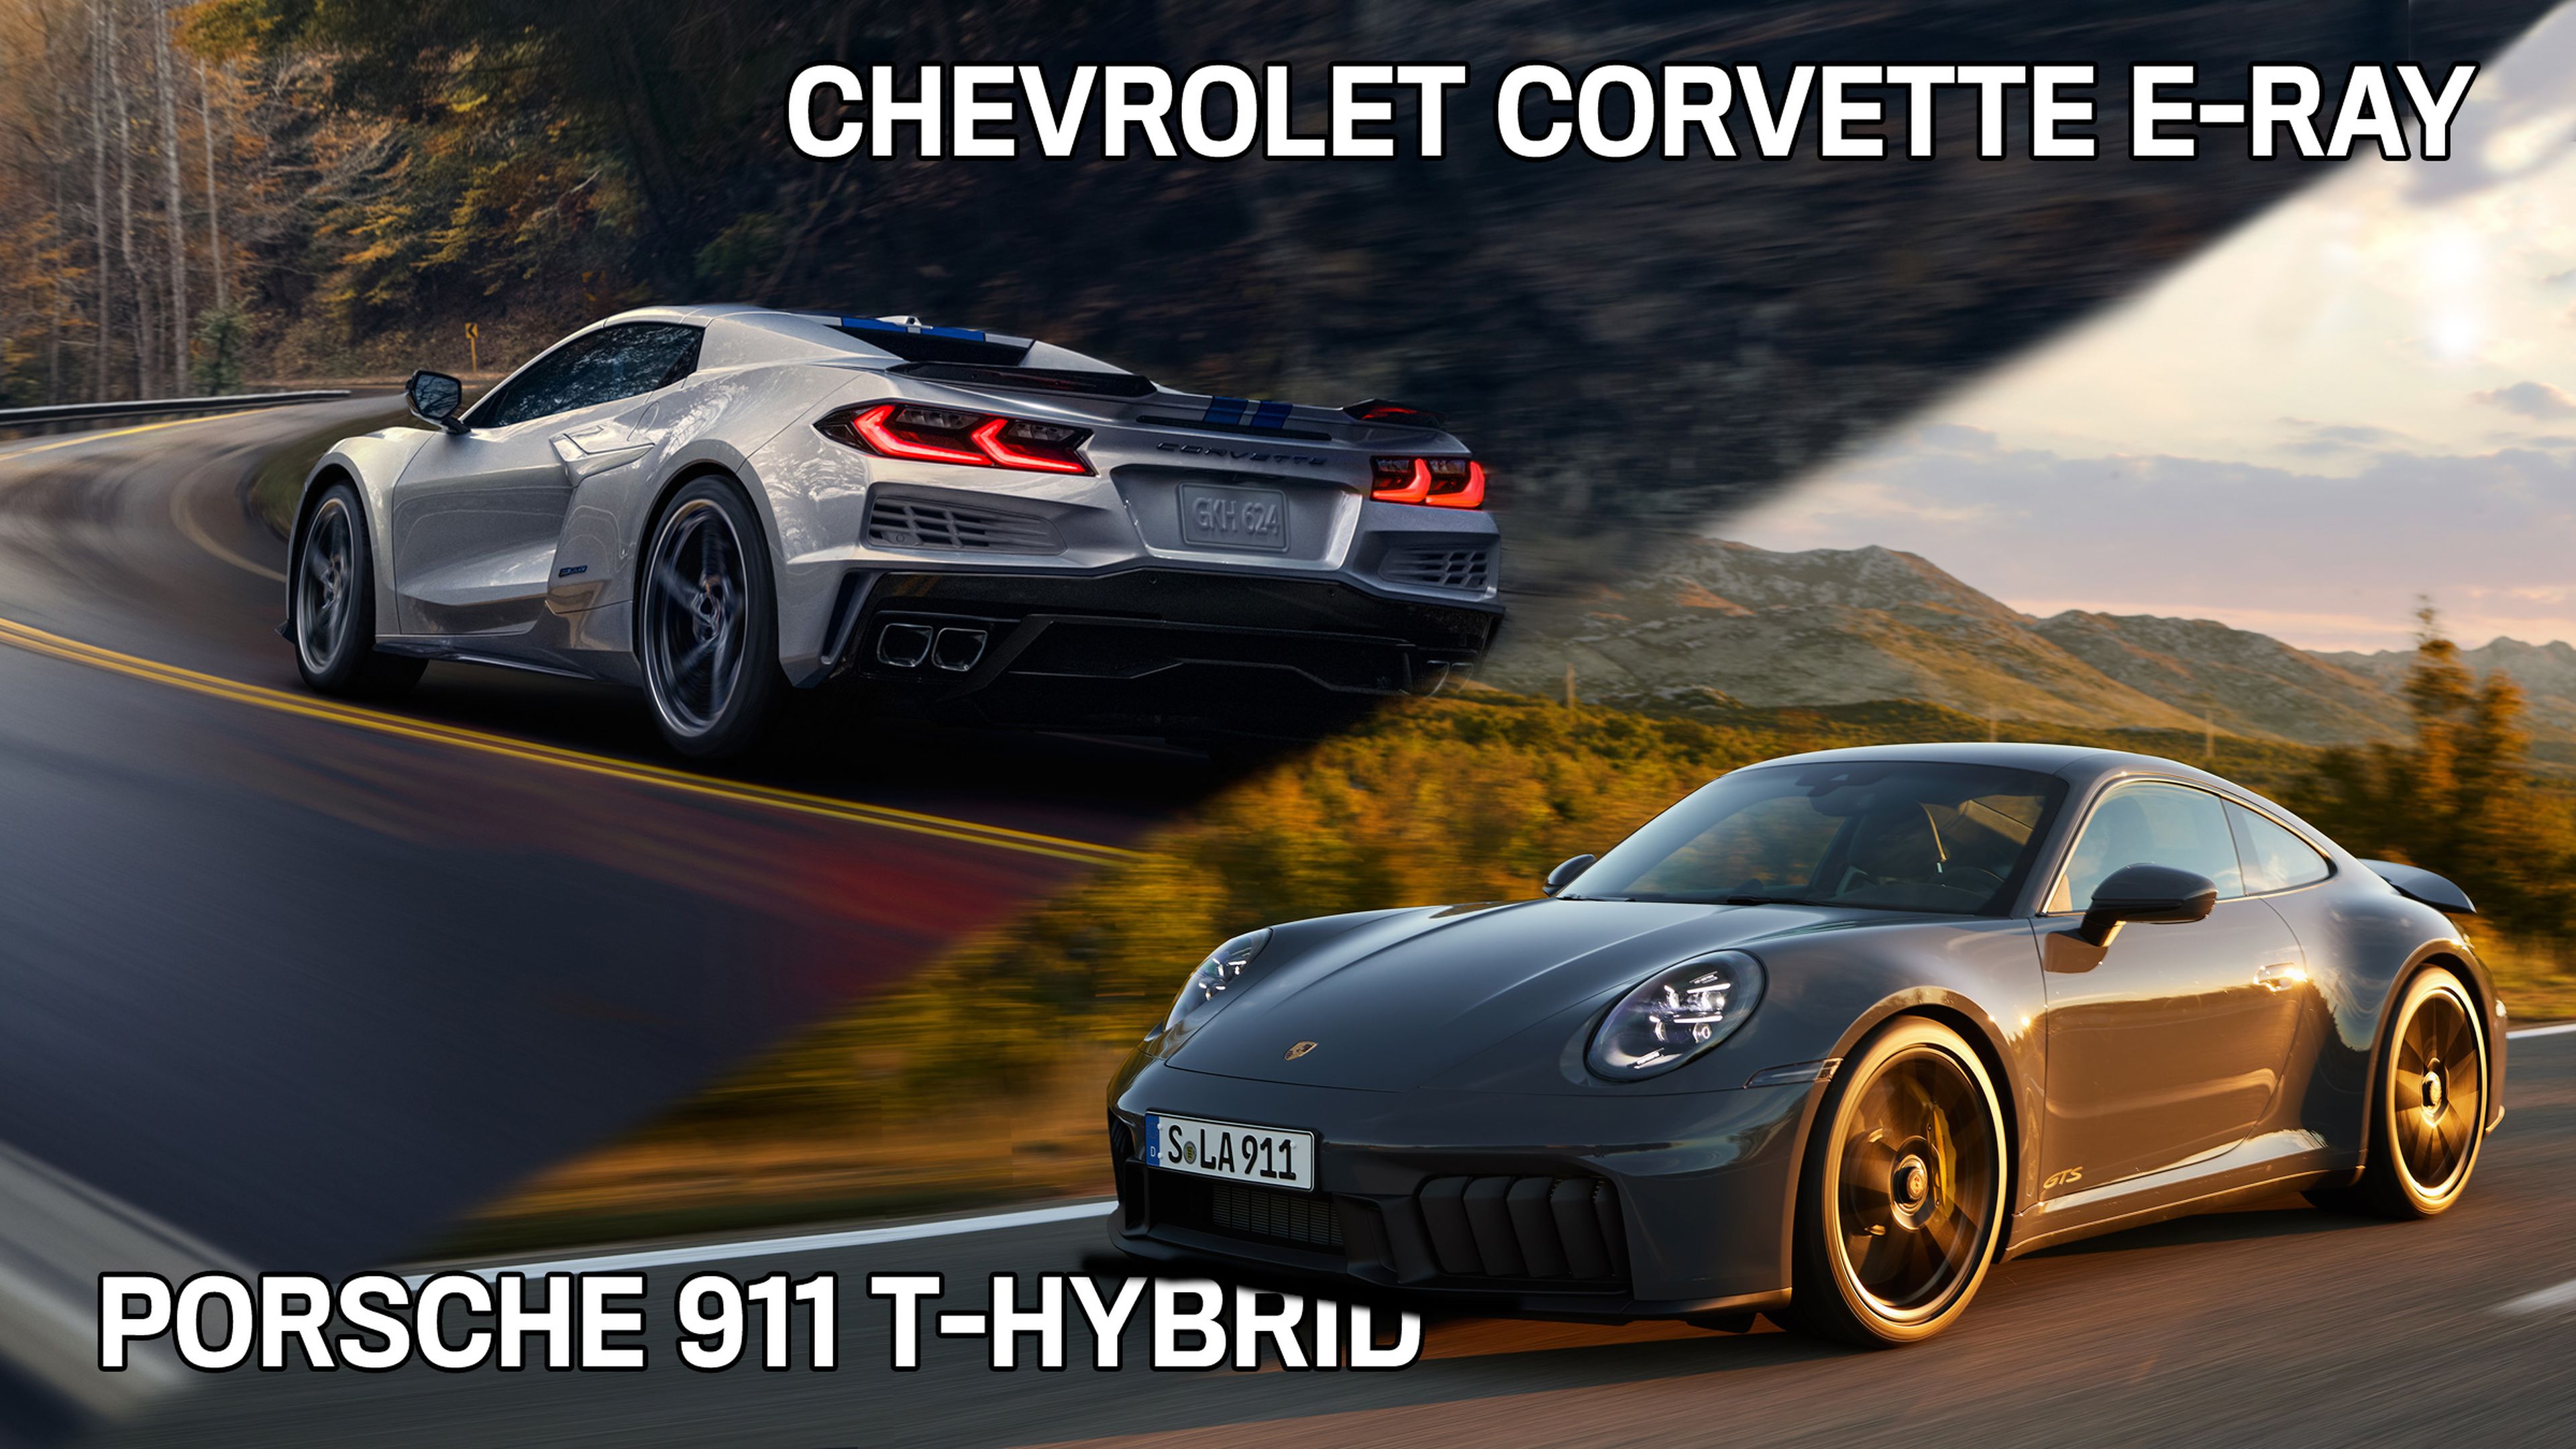 Porsche 911 T-Hybrid vs Chevrolet Corvette E-Ray